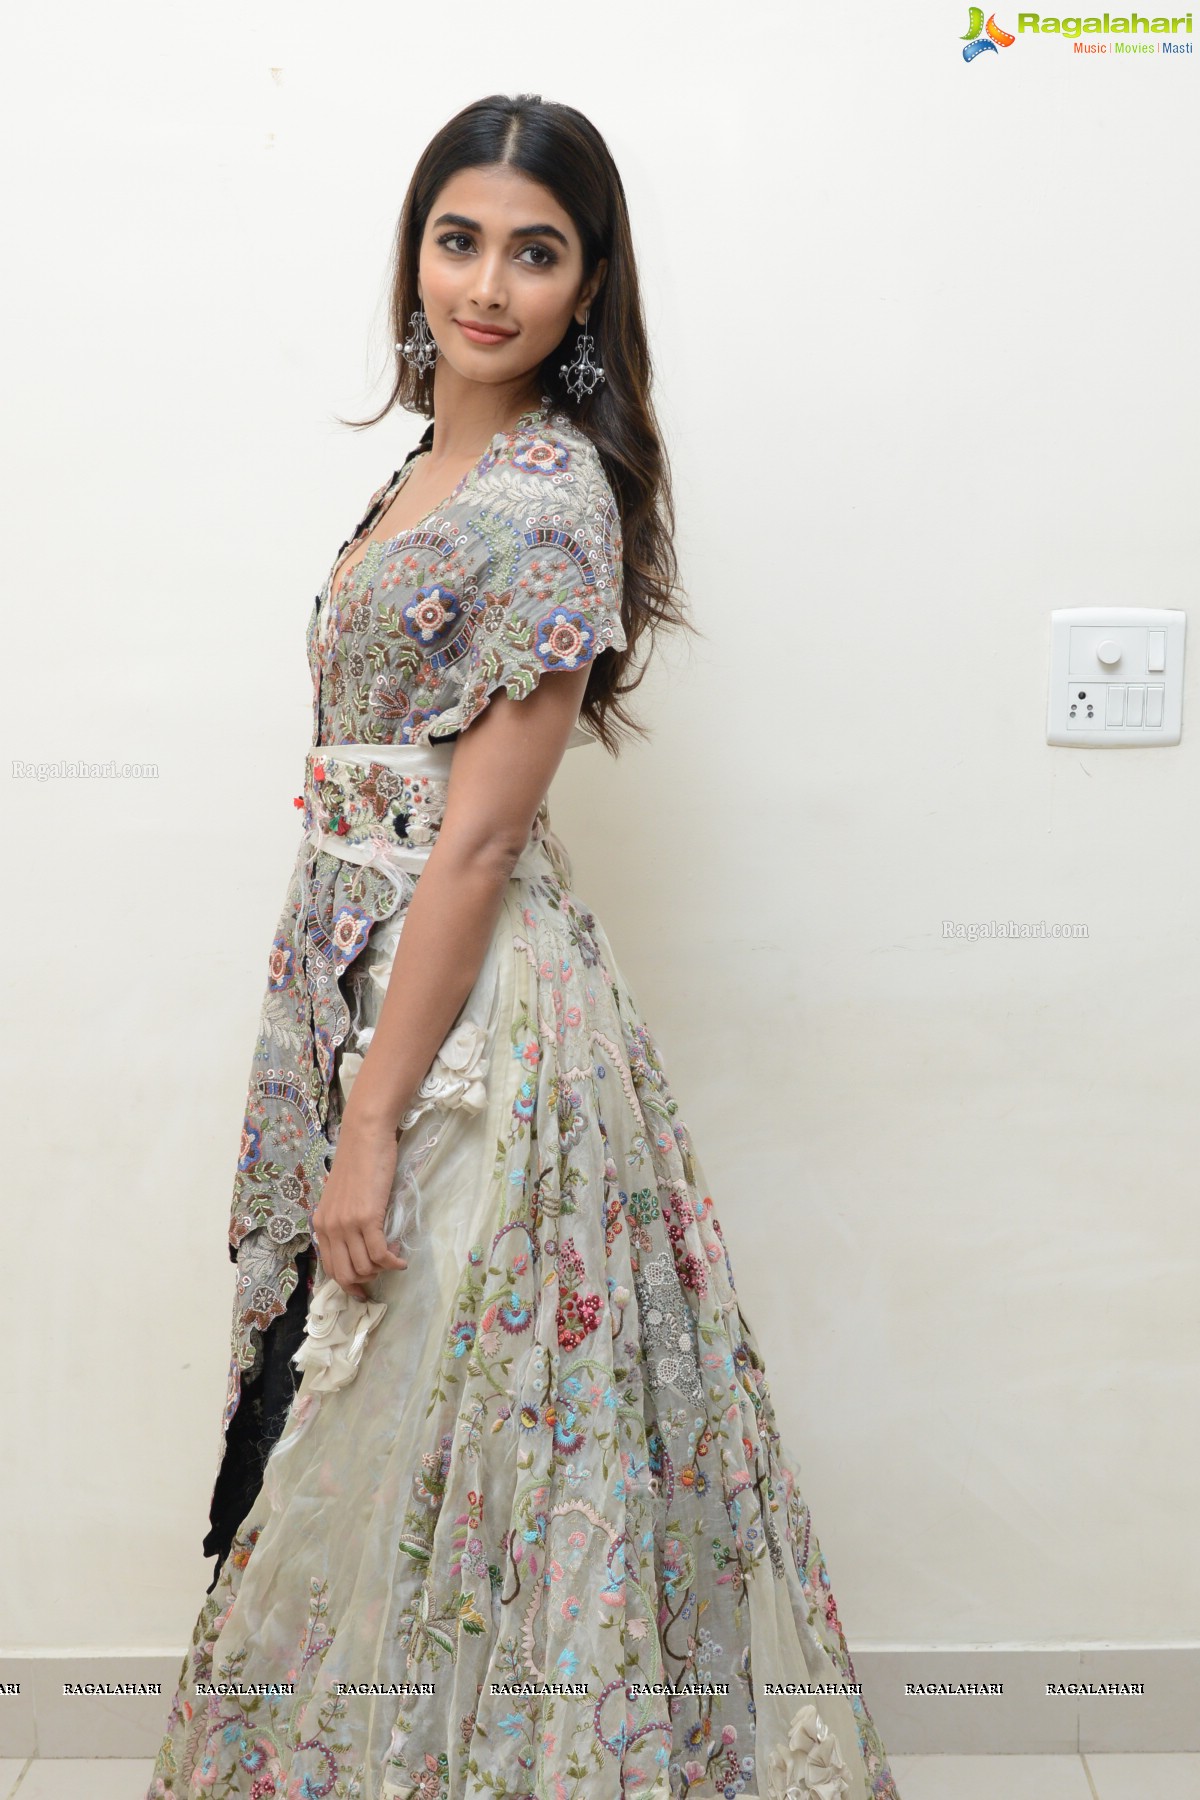 Pooja Hegde at Saakshyam Audio Release, Photo Gallery